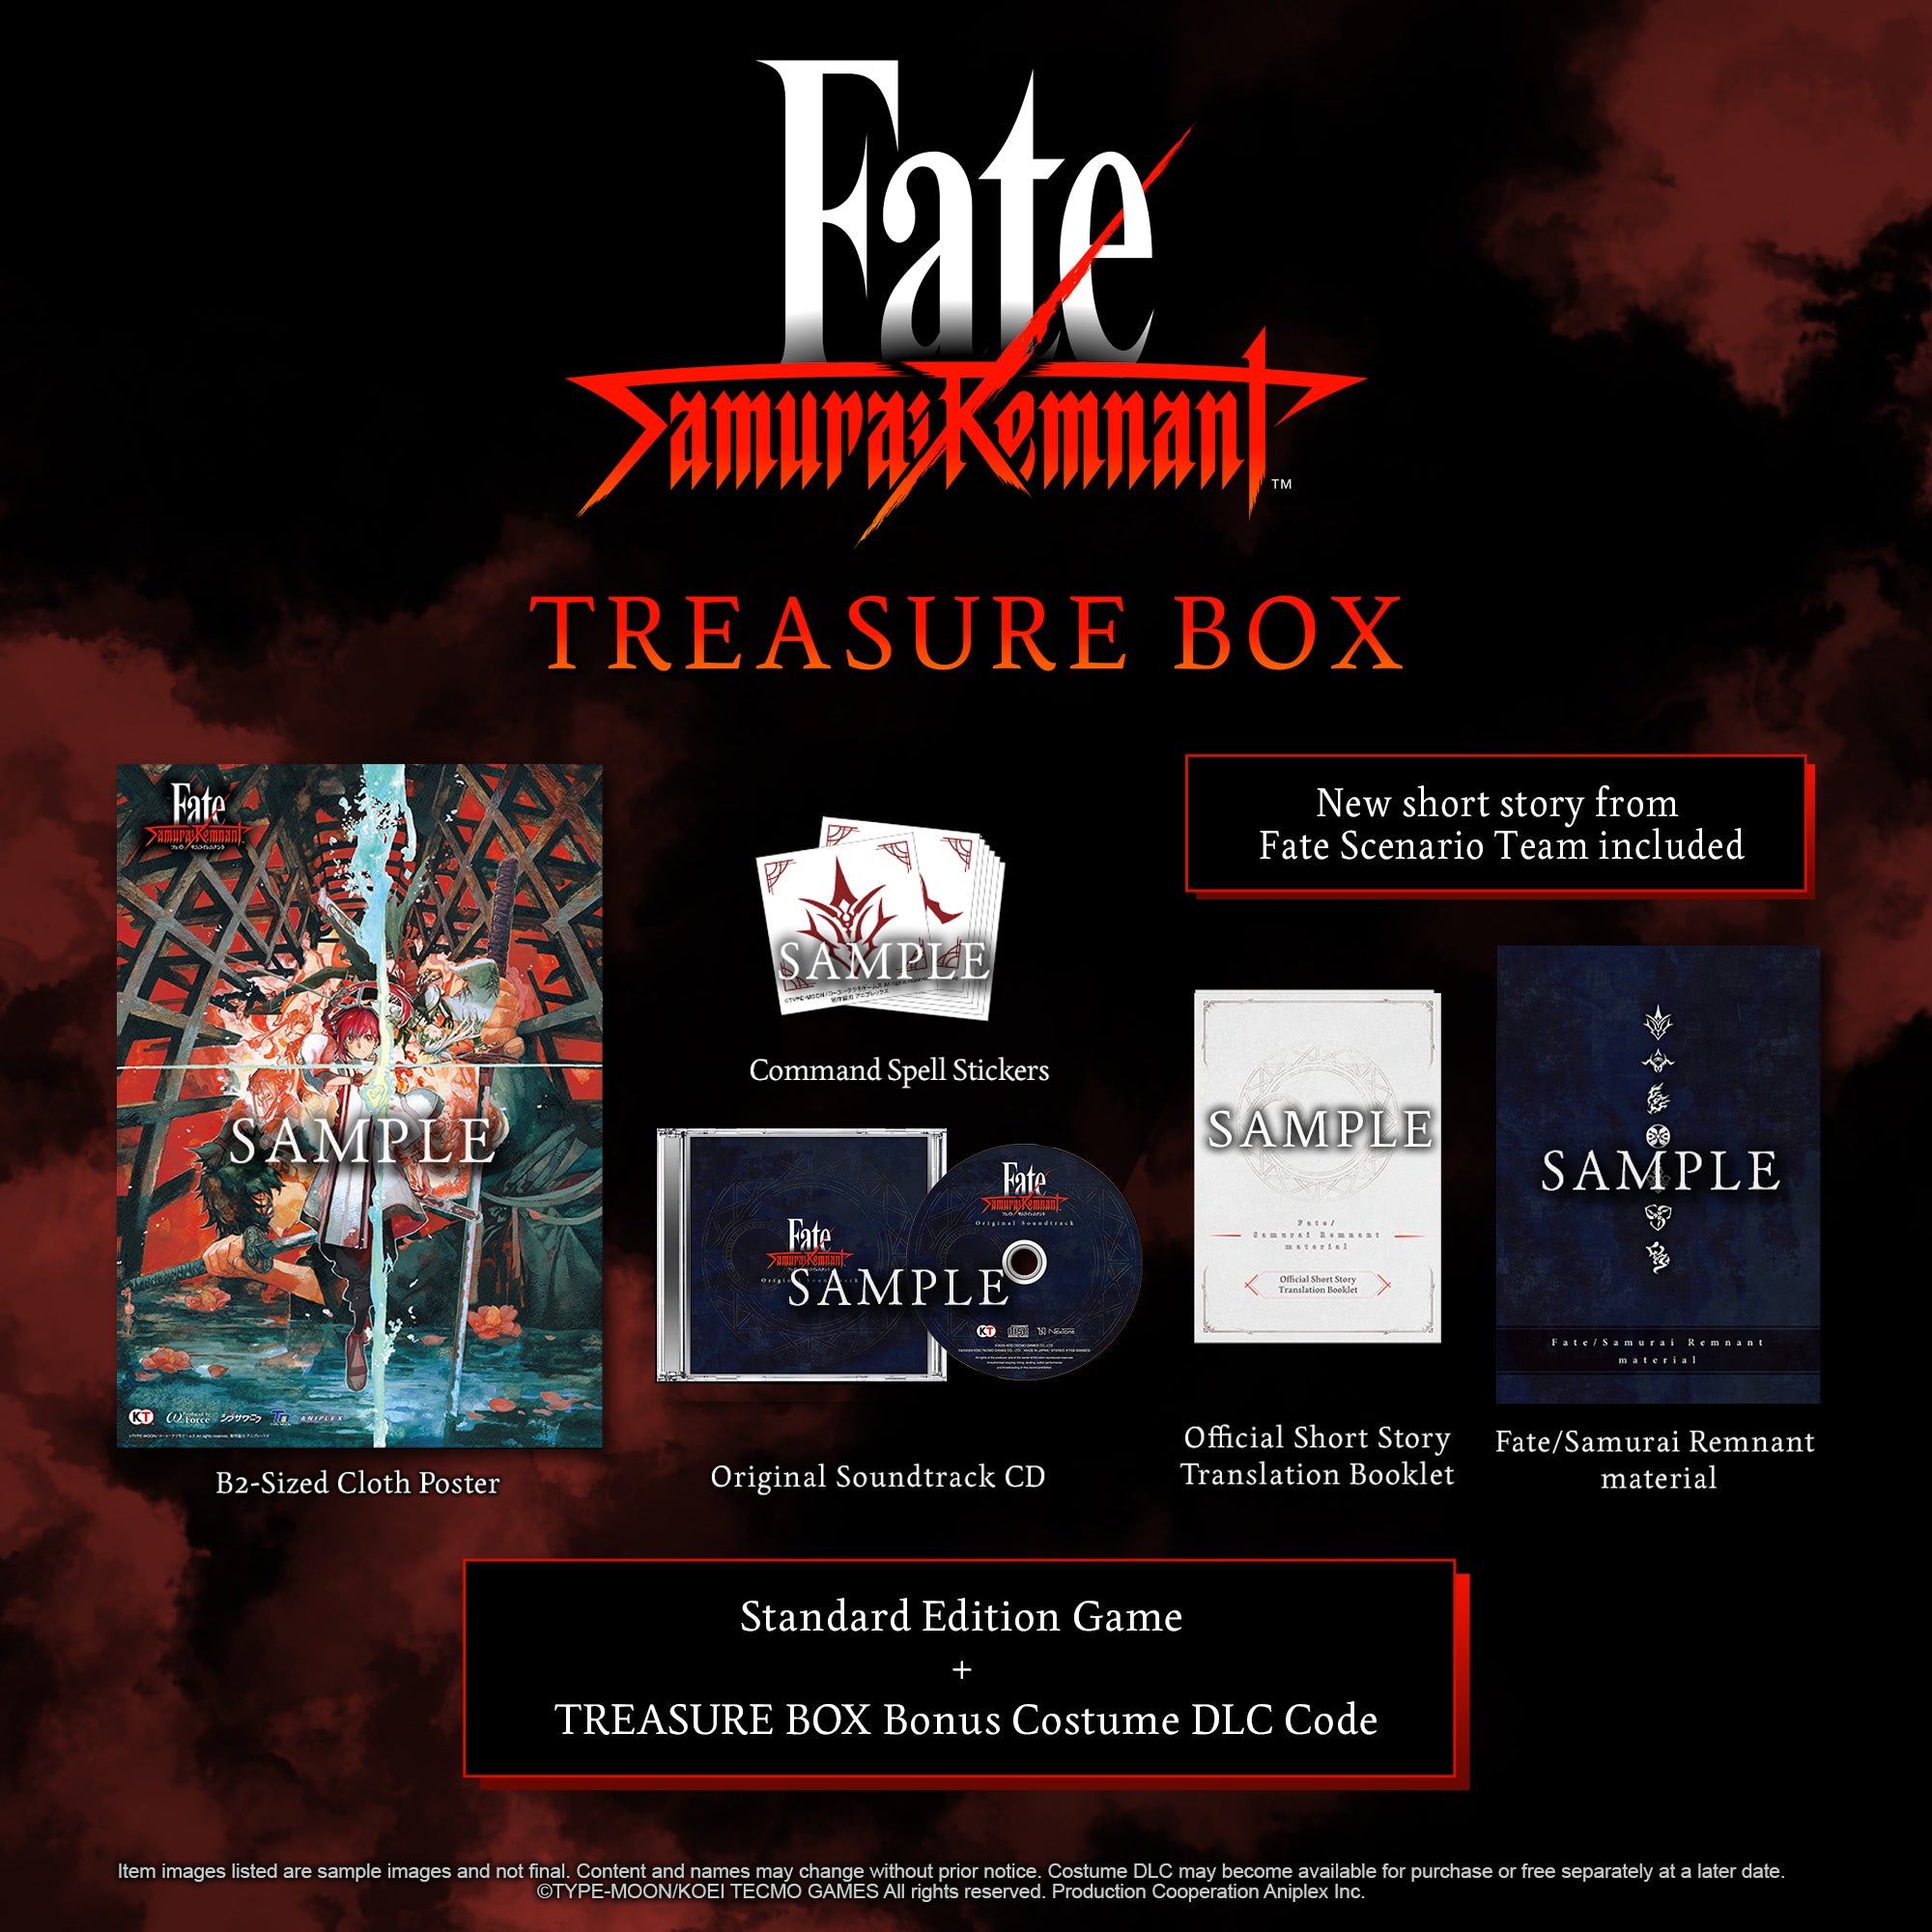 Fate/Samurai Remnant - TREASURE BOX - Nintendo Switch